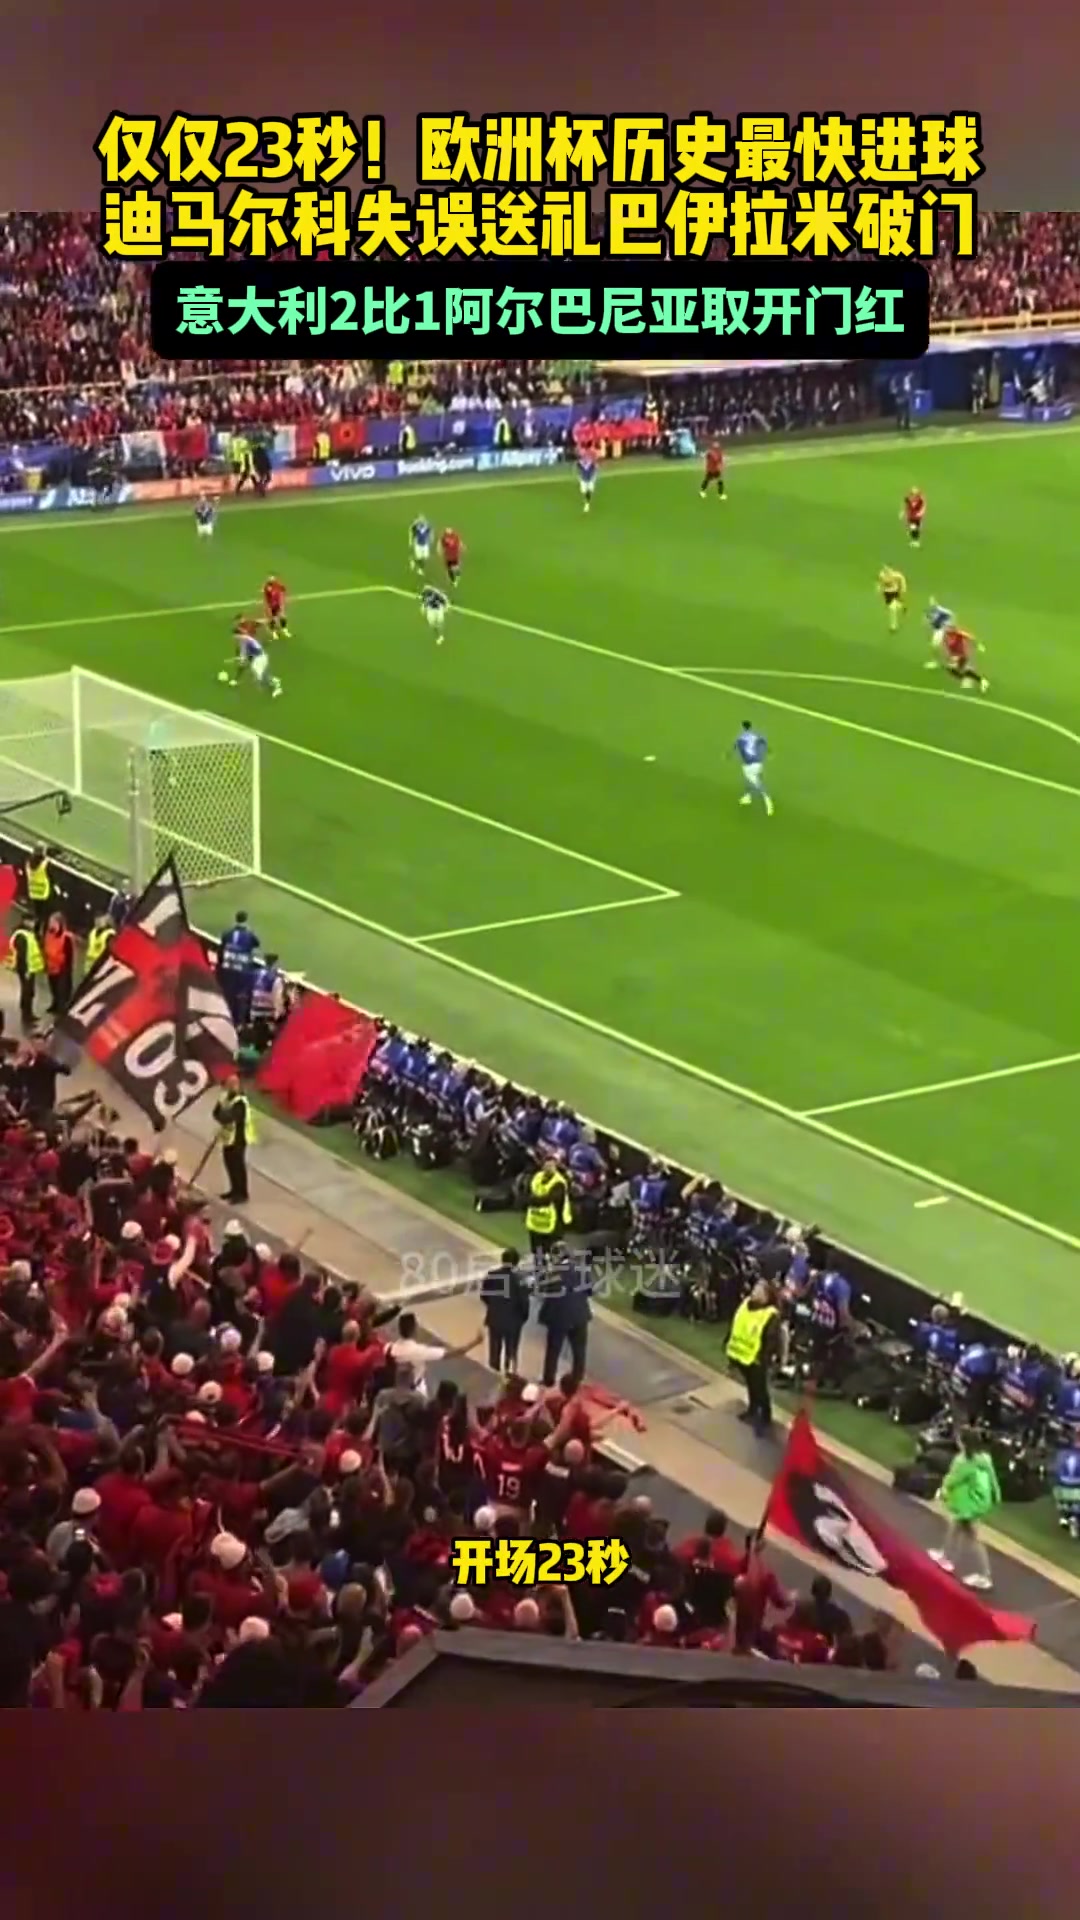 23秒阿尔巴尼亚打入欧洲杯历史最快进球,球迷们疯狂了